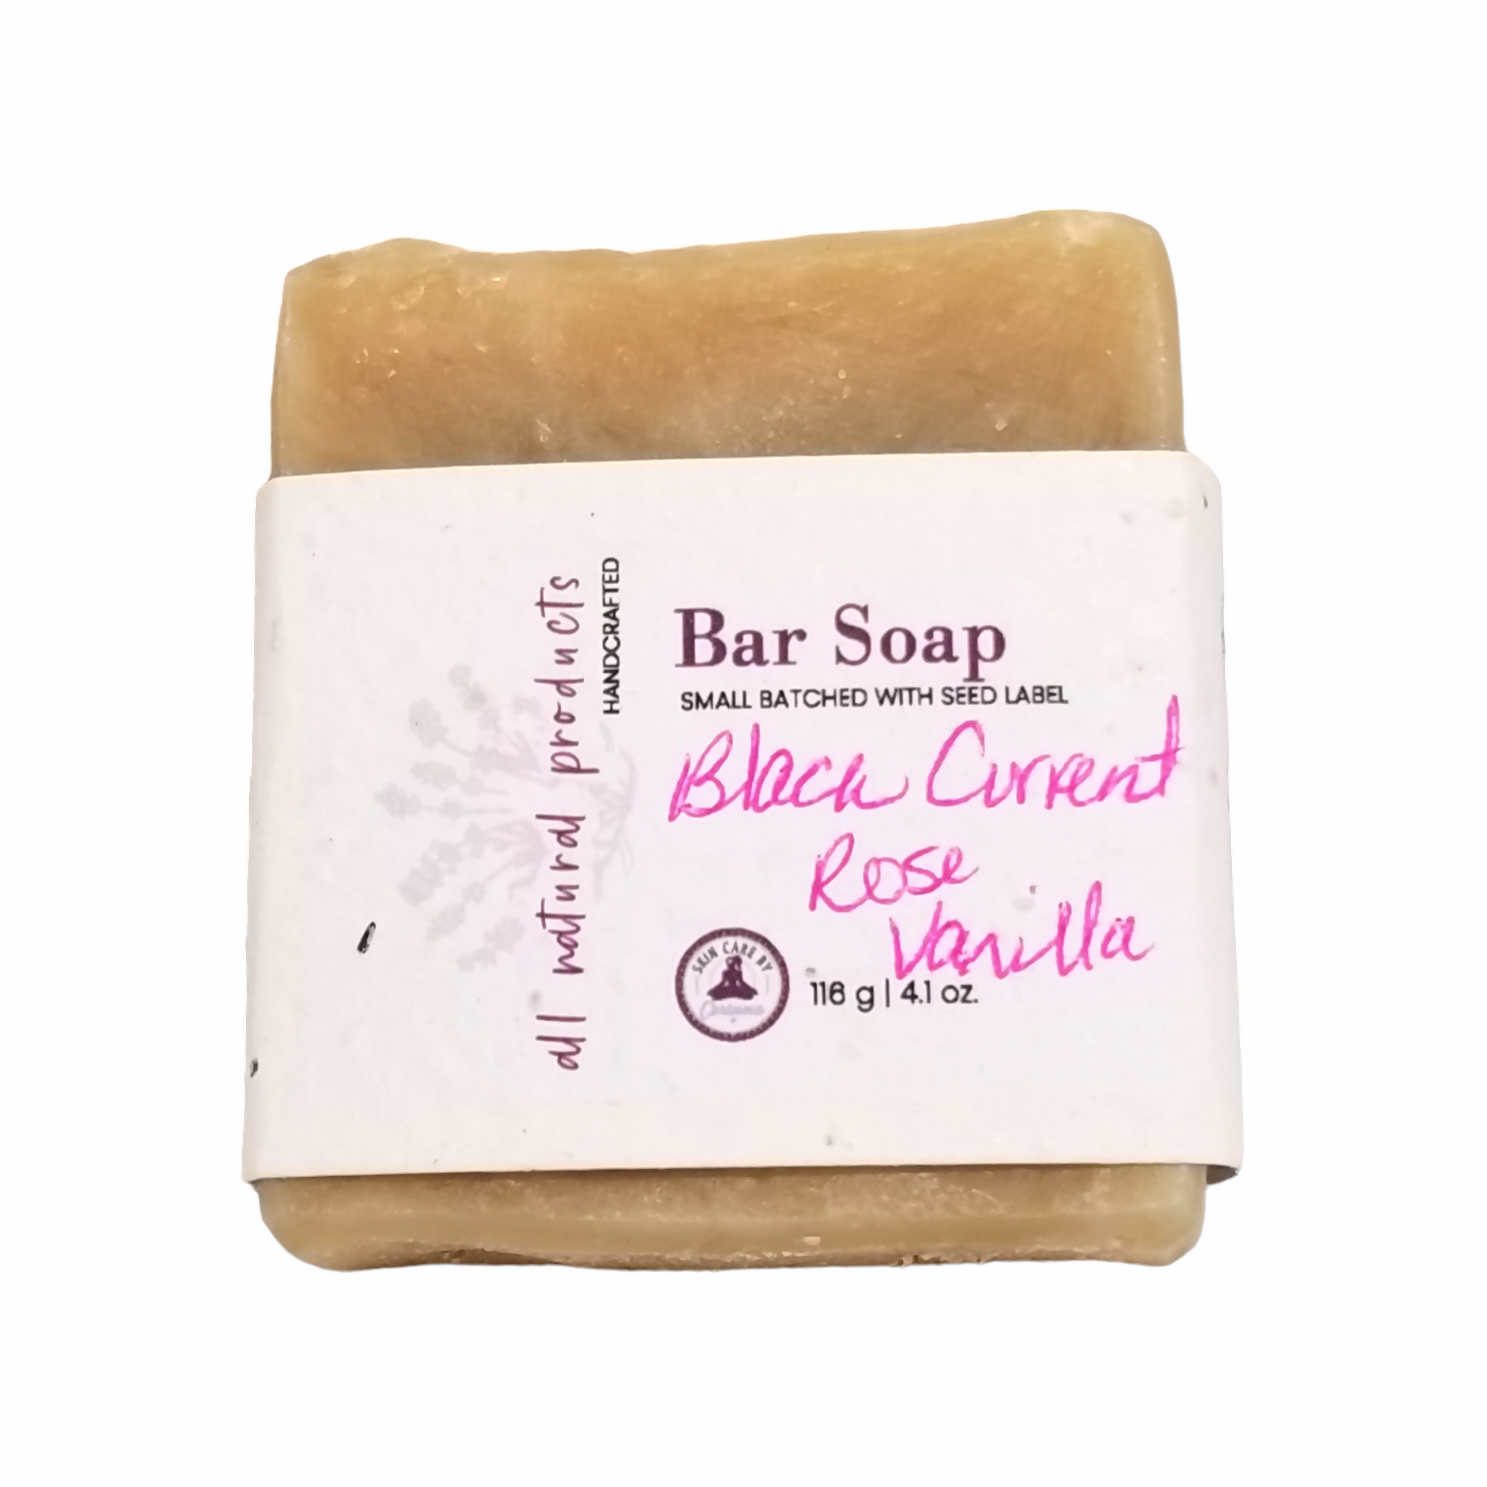 Black Current, Rose & Vanilla Bar Soap